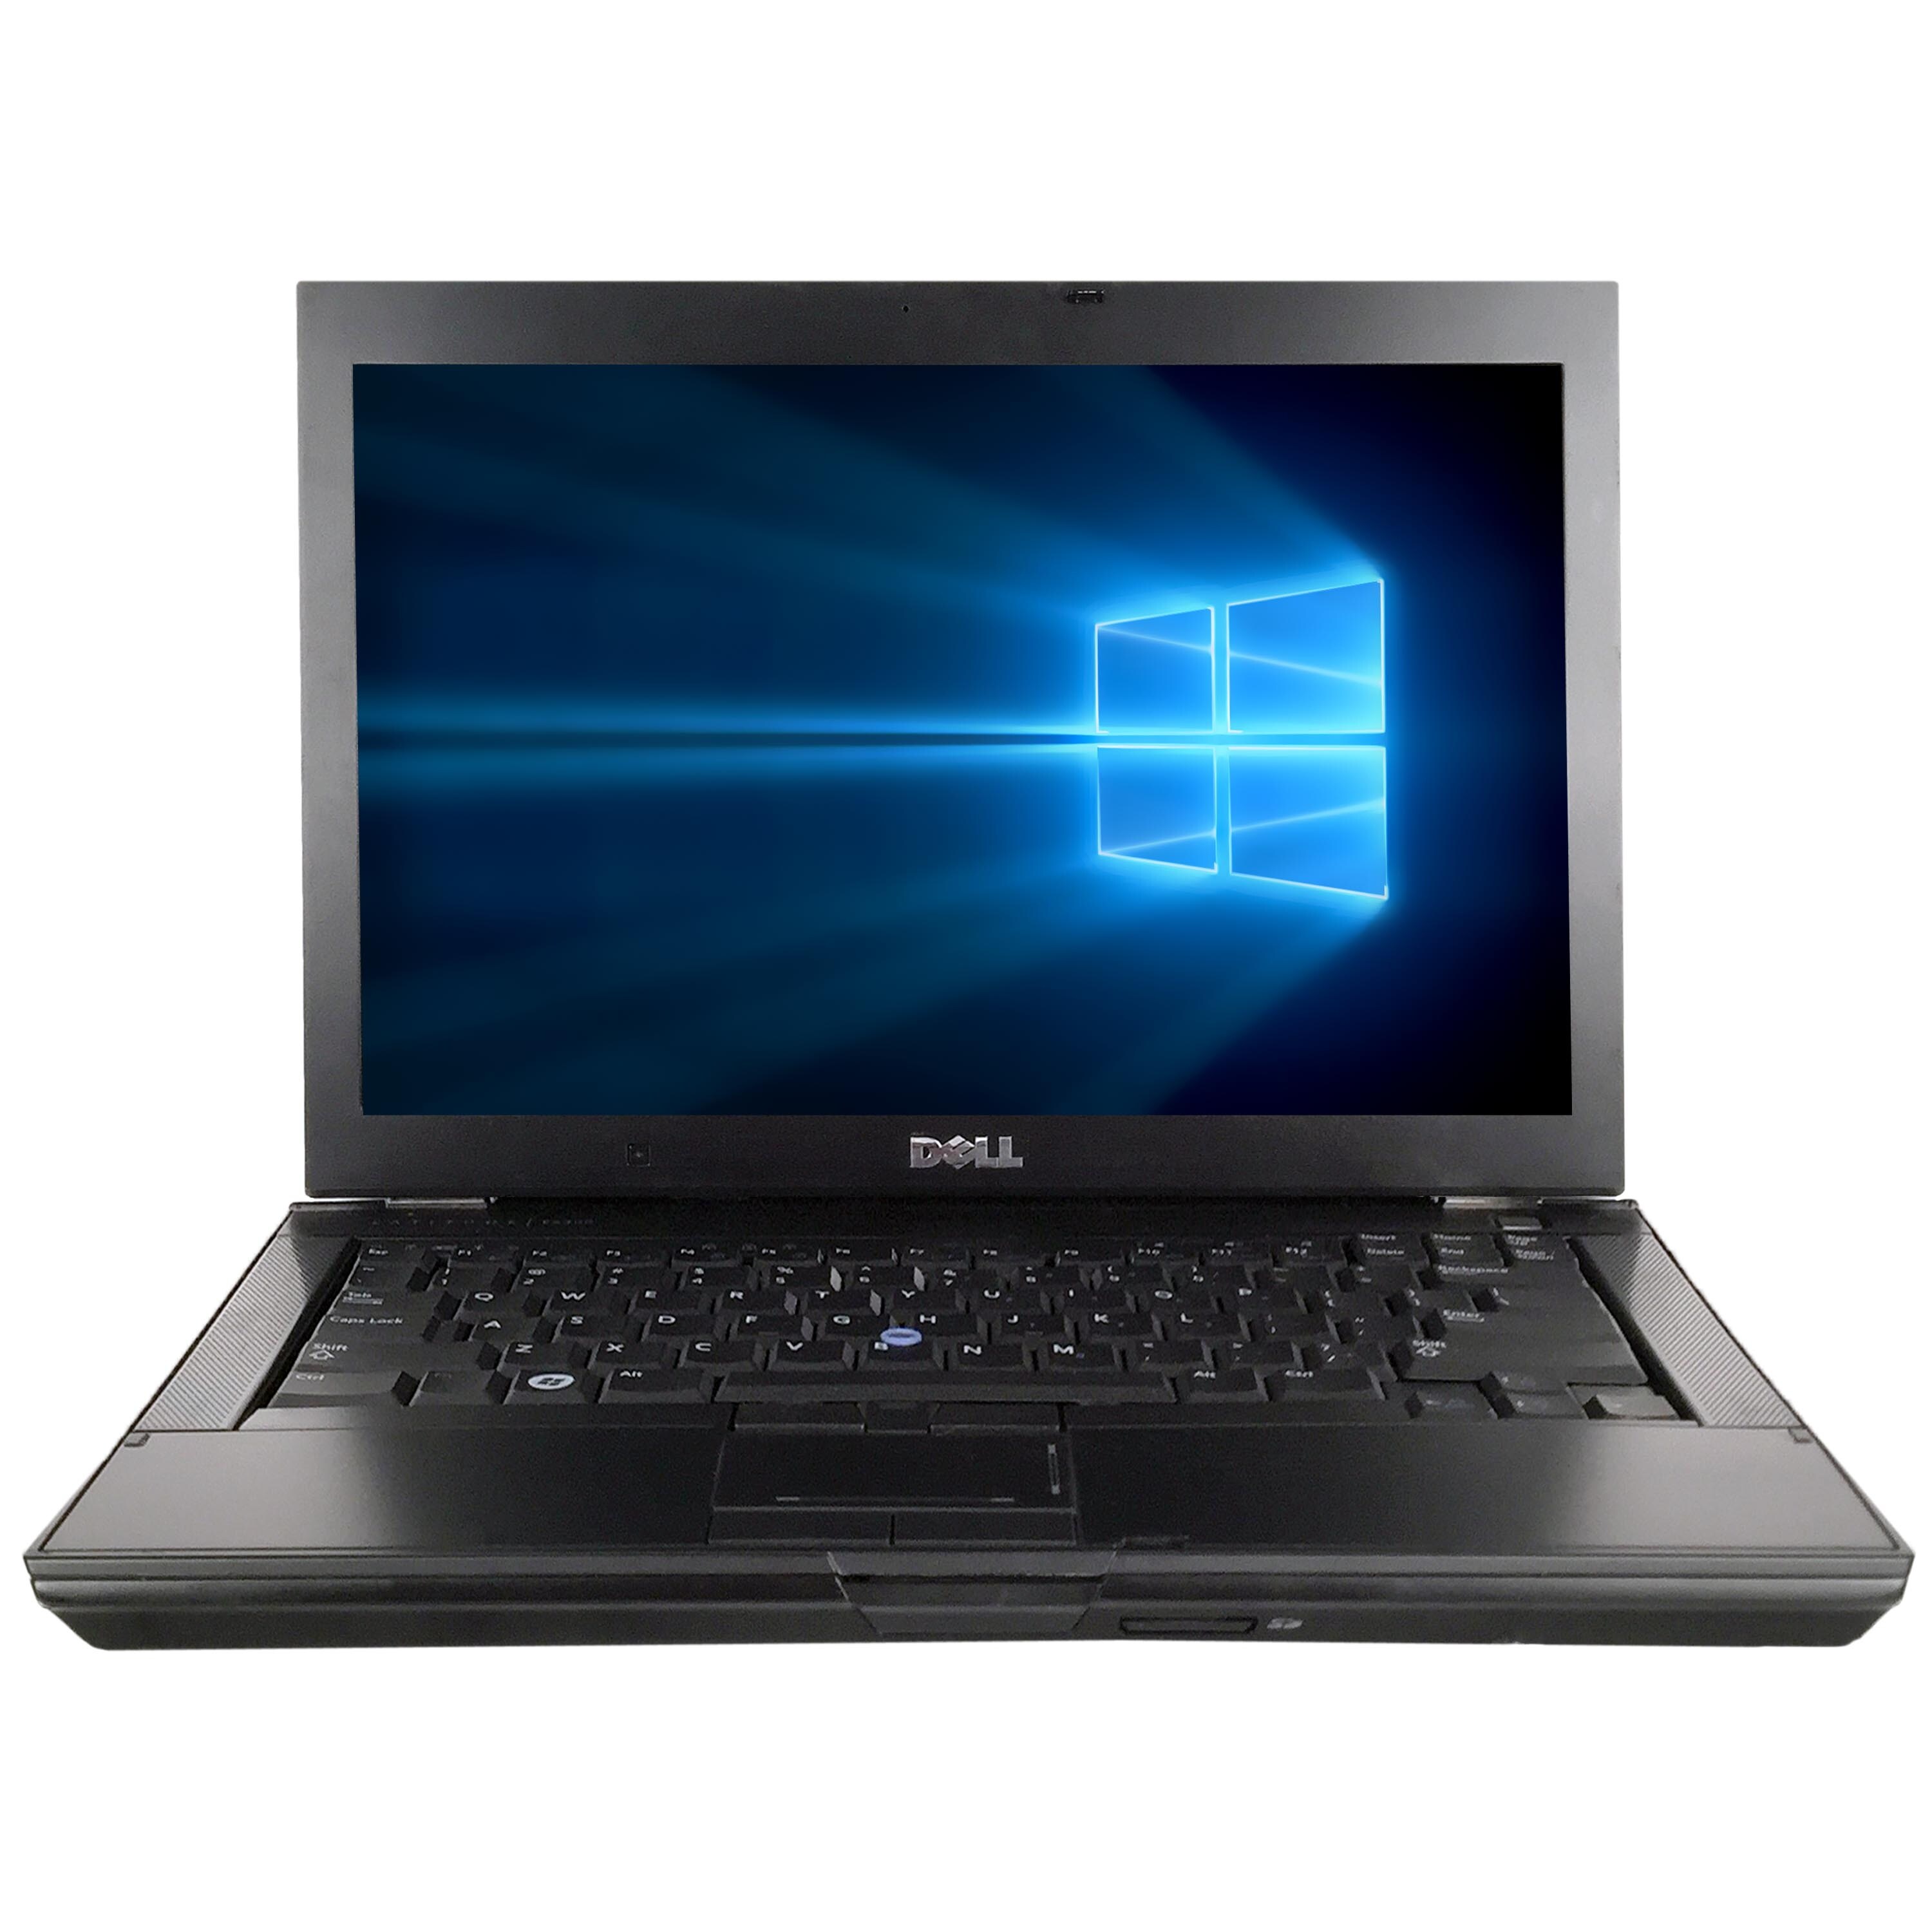 Shop Refurbished Dell Latitude E6410 141 Laptop Intel Core I5 520m 2